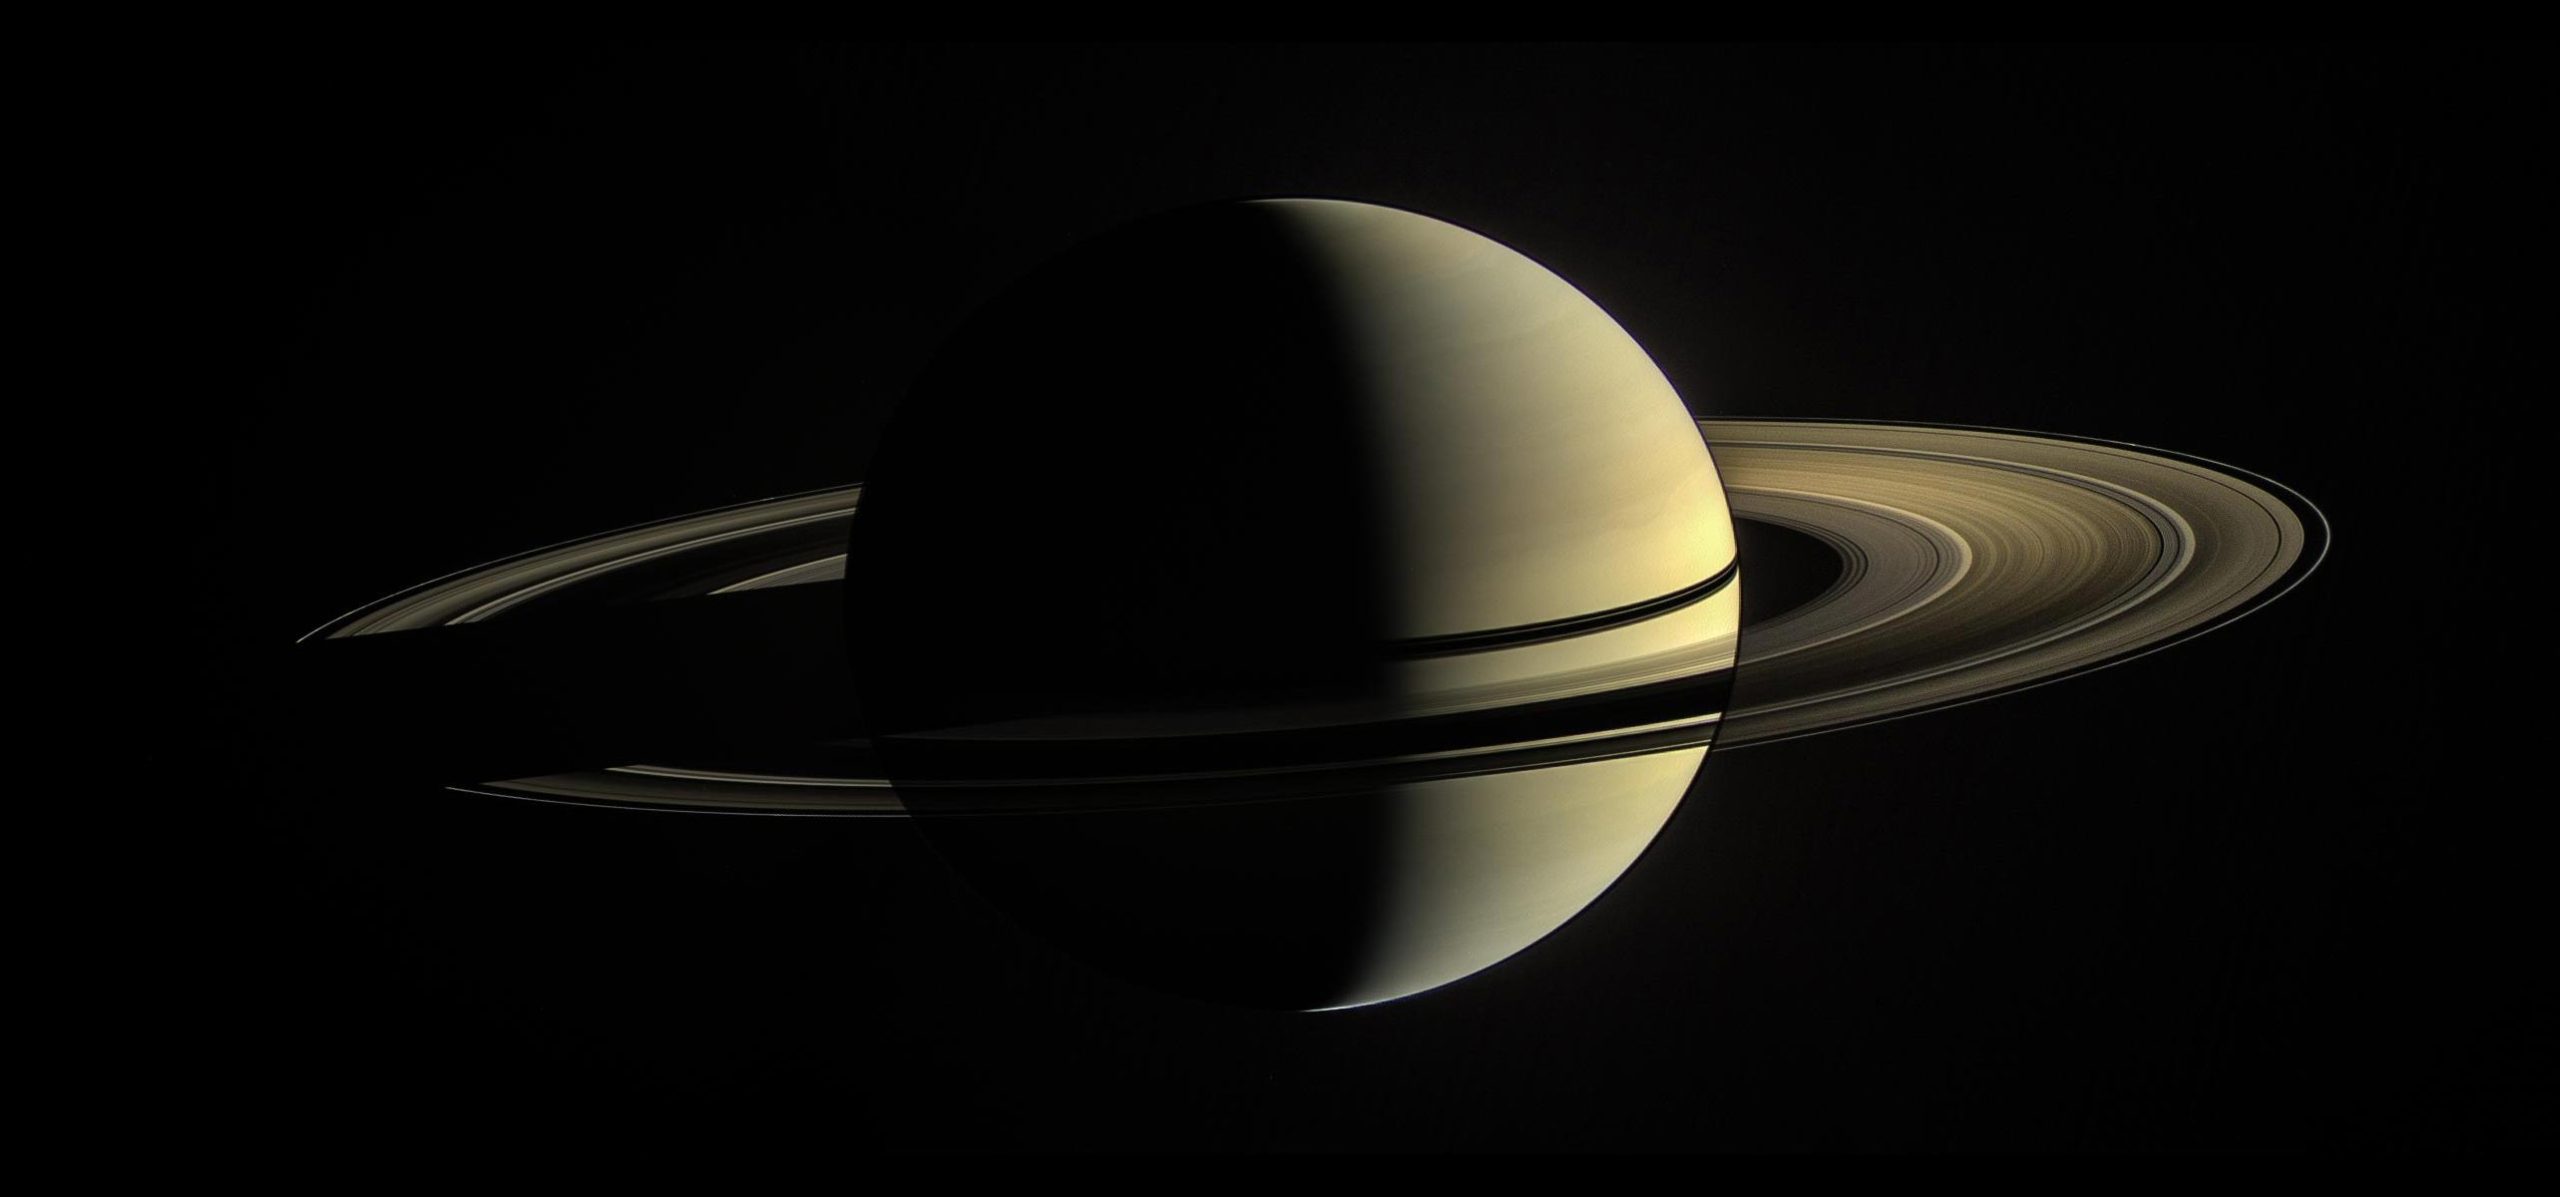 Les anneaux de Saturne sont petits et peuvent disparaître rapidement